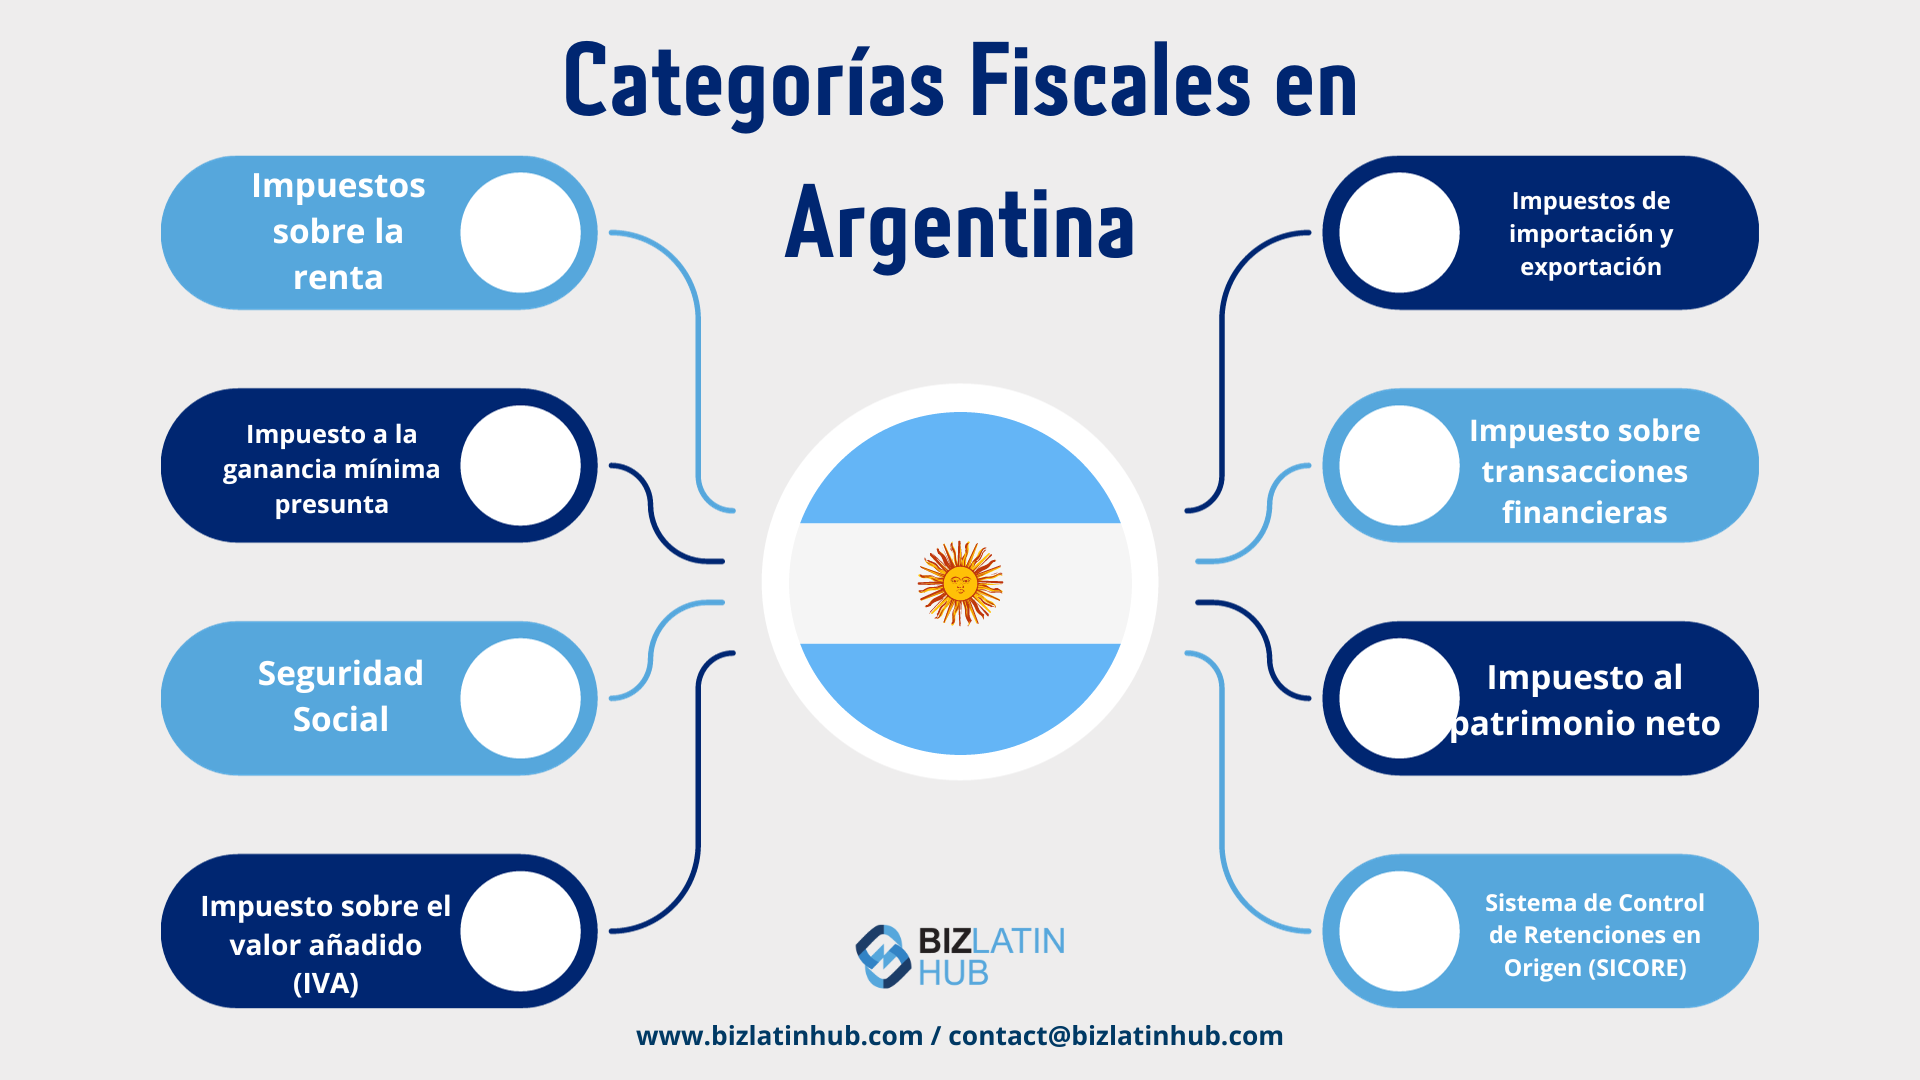 Requisitos Contables y Fiscales en Argentina – Categorías Fiscales en Argentina